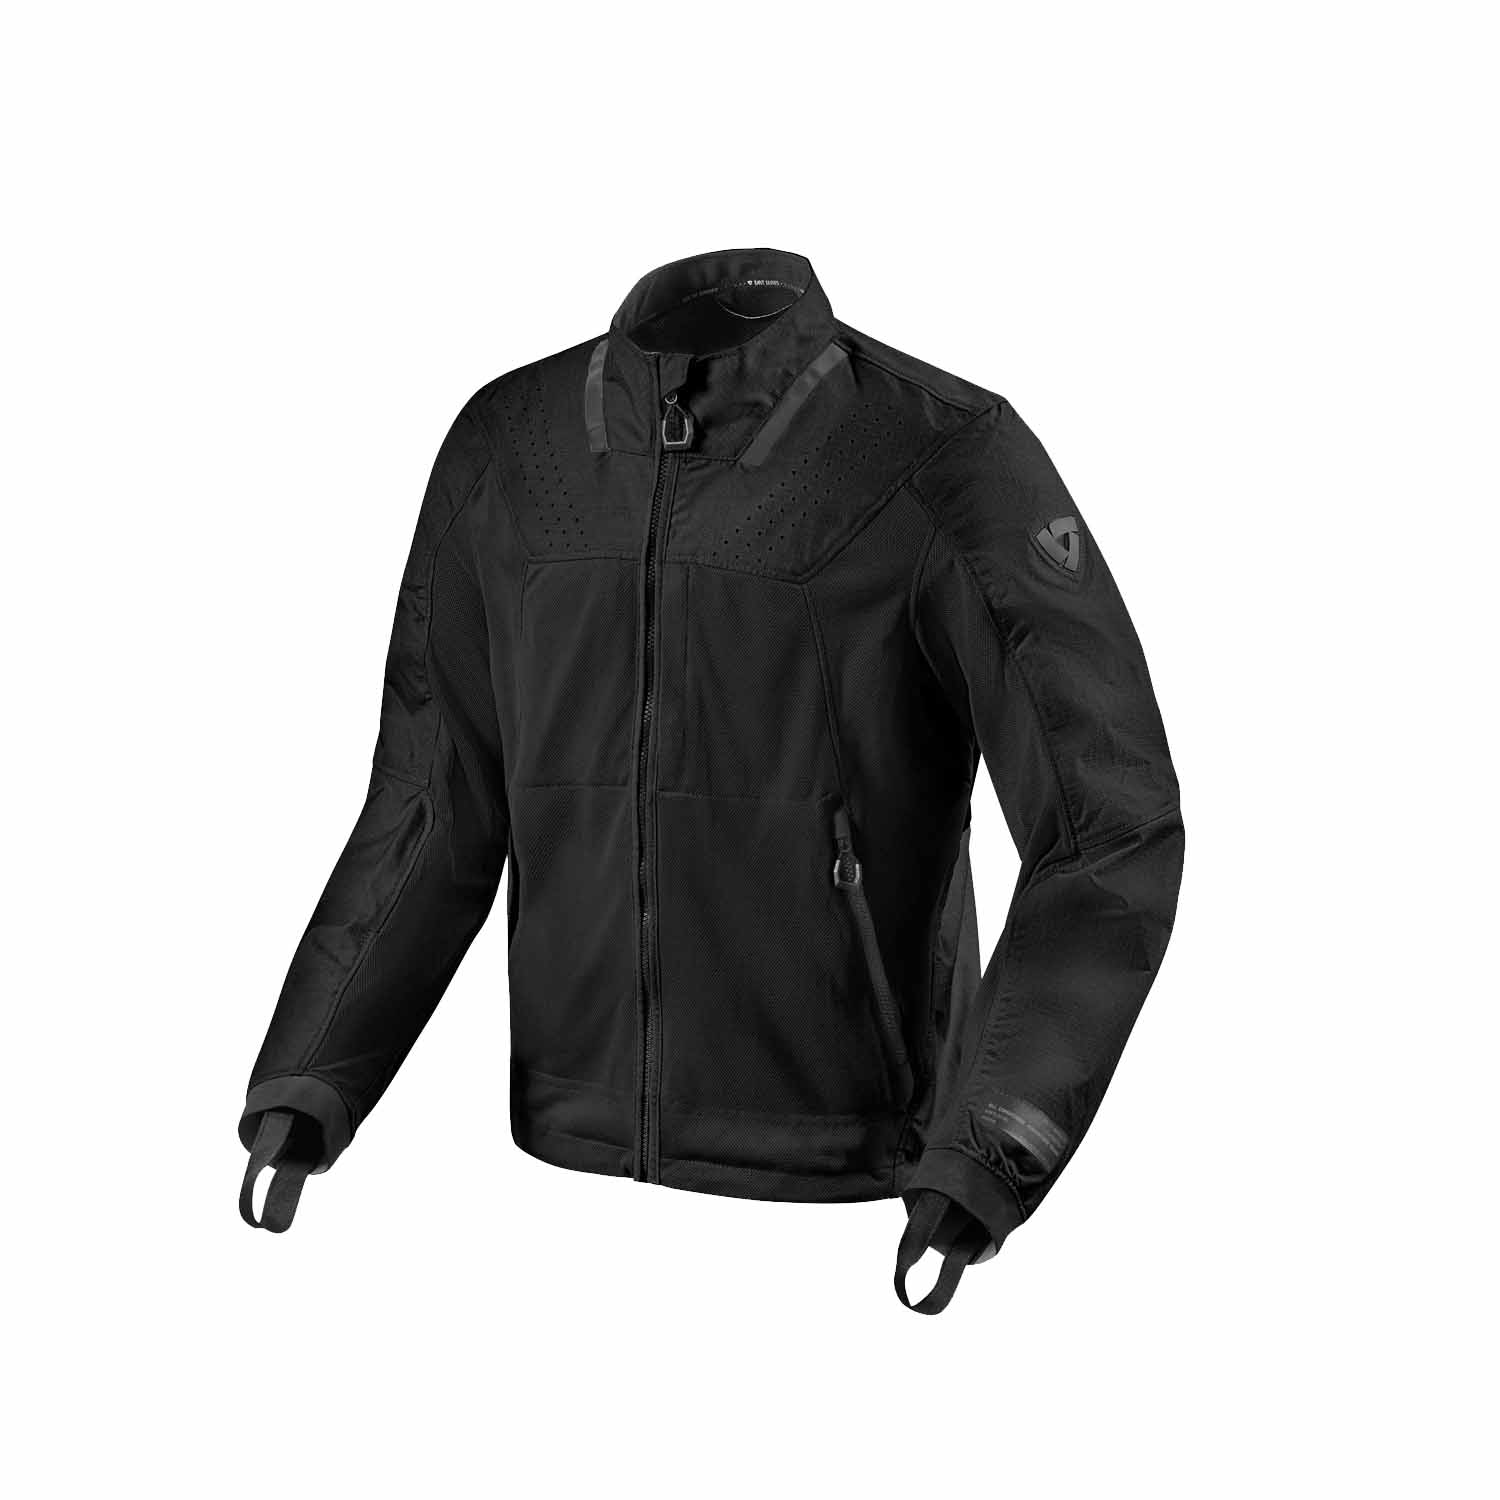 Image of REV'IT! Territory Jacket Black Standard Size 2XL EN